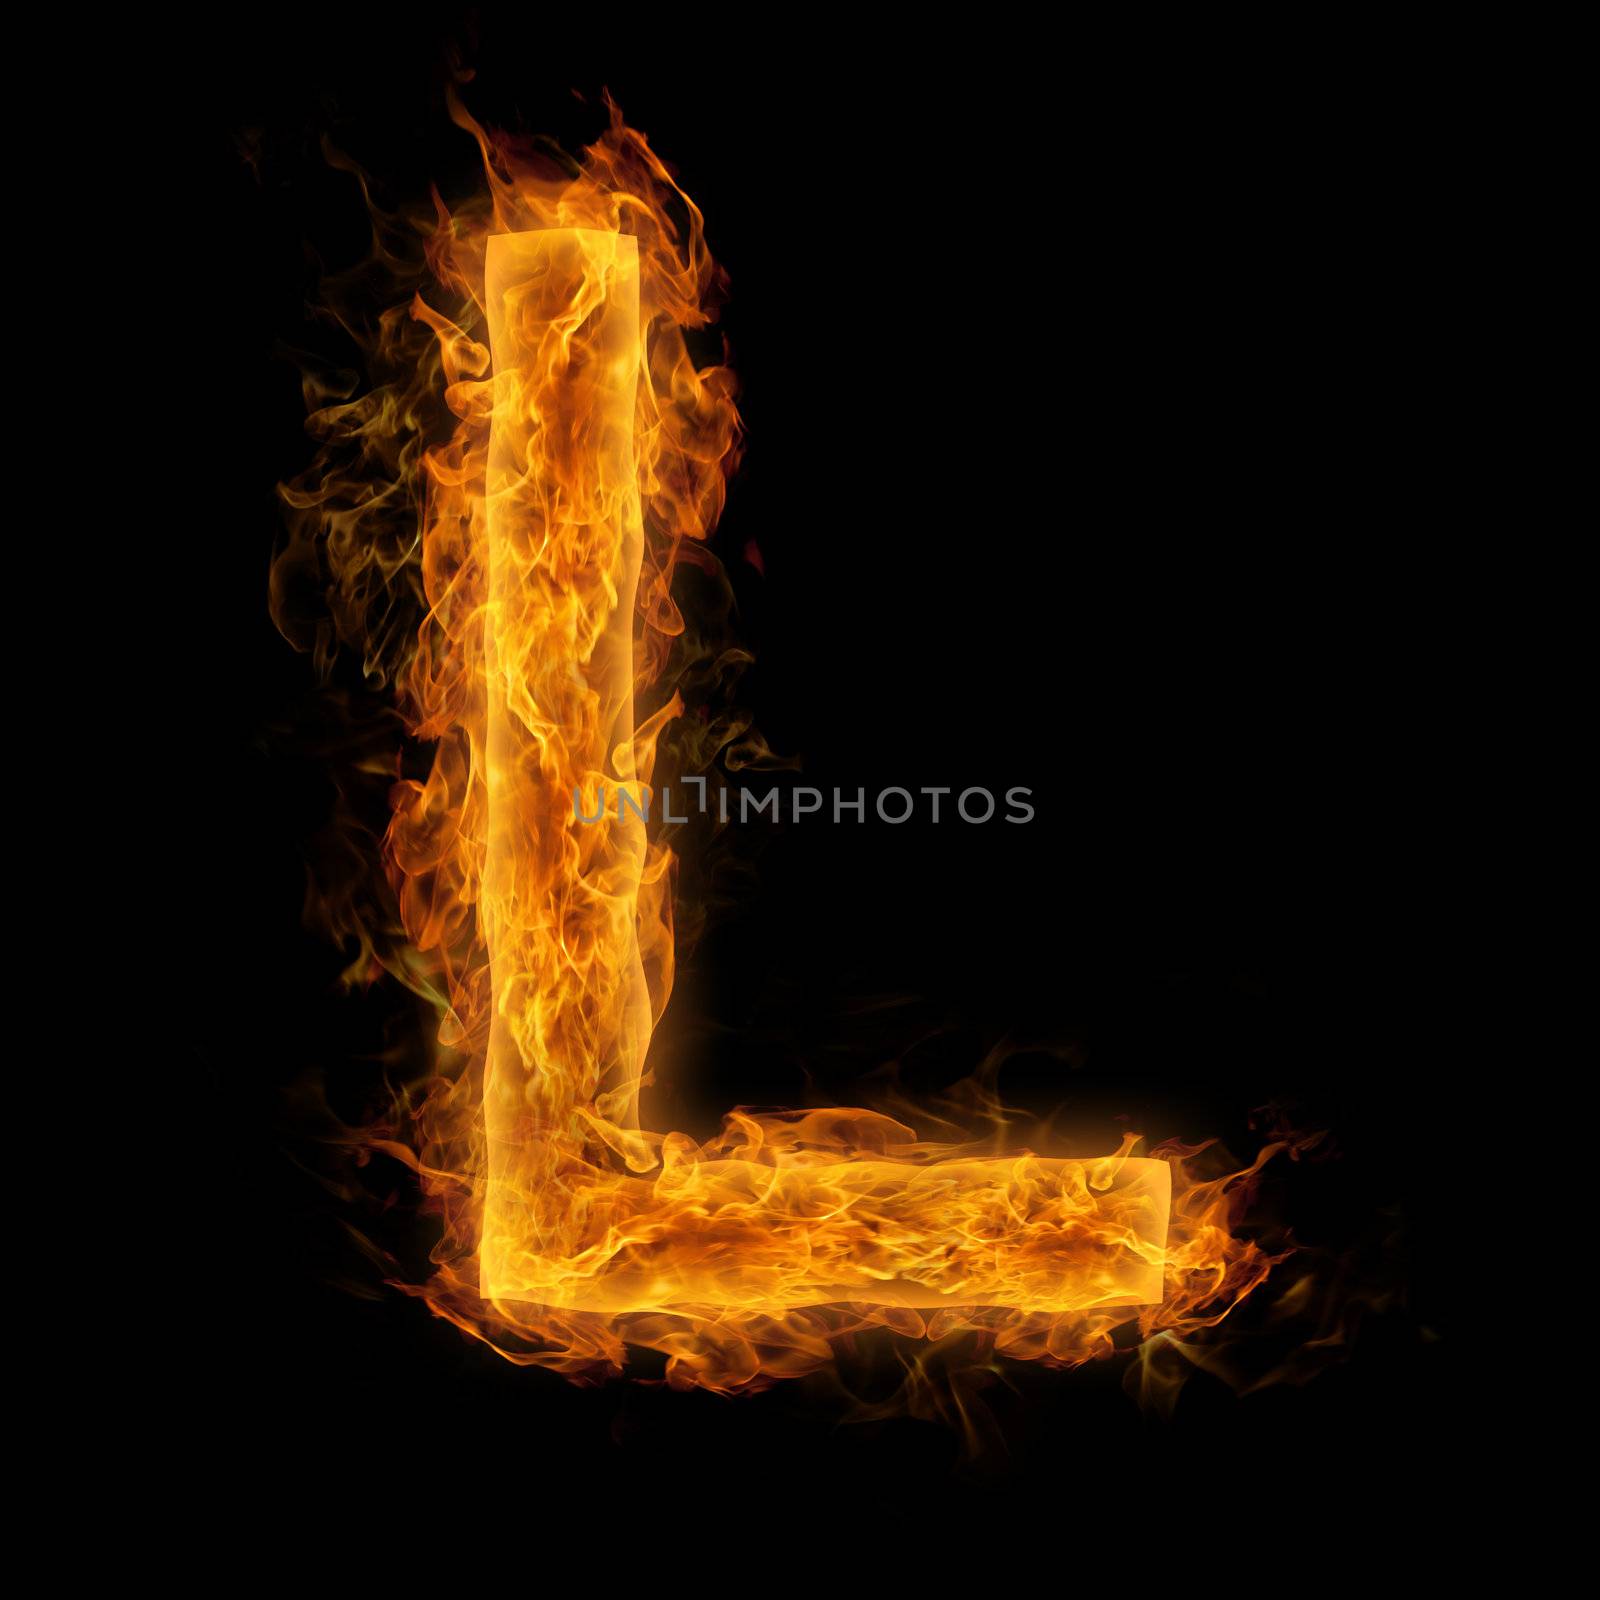 Flaming Letter L by melpomene